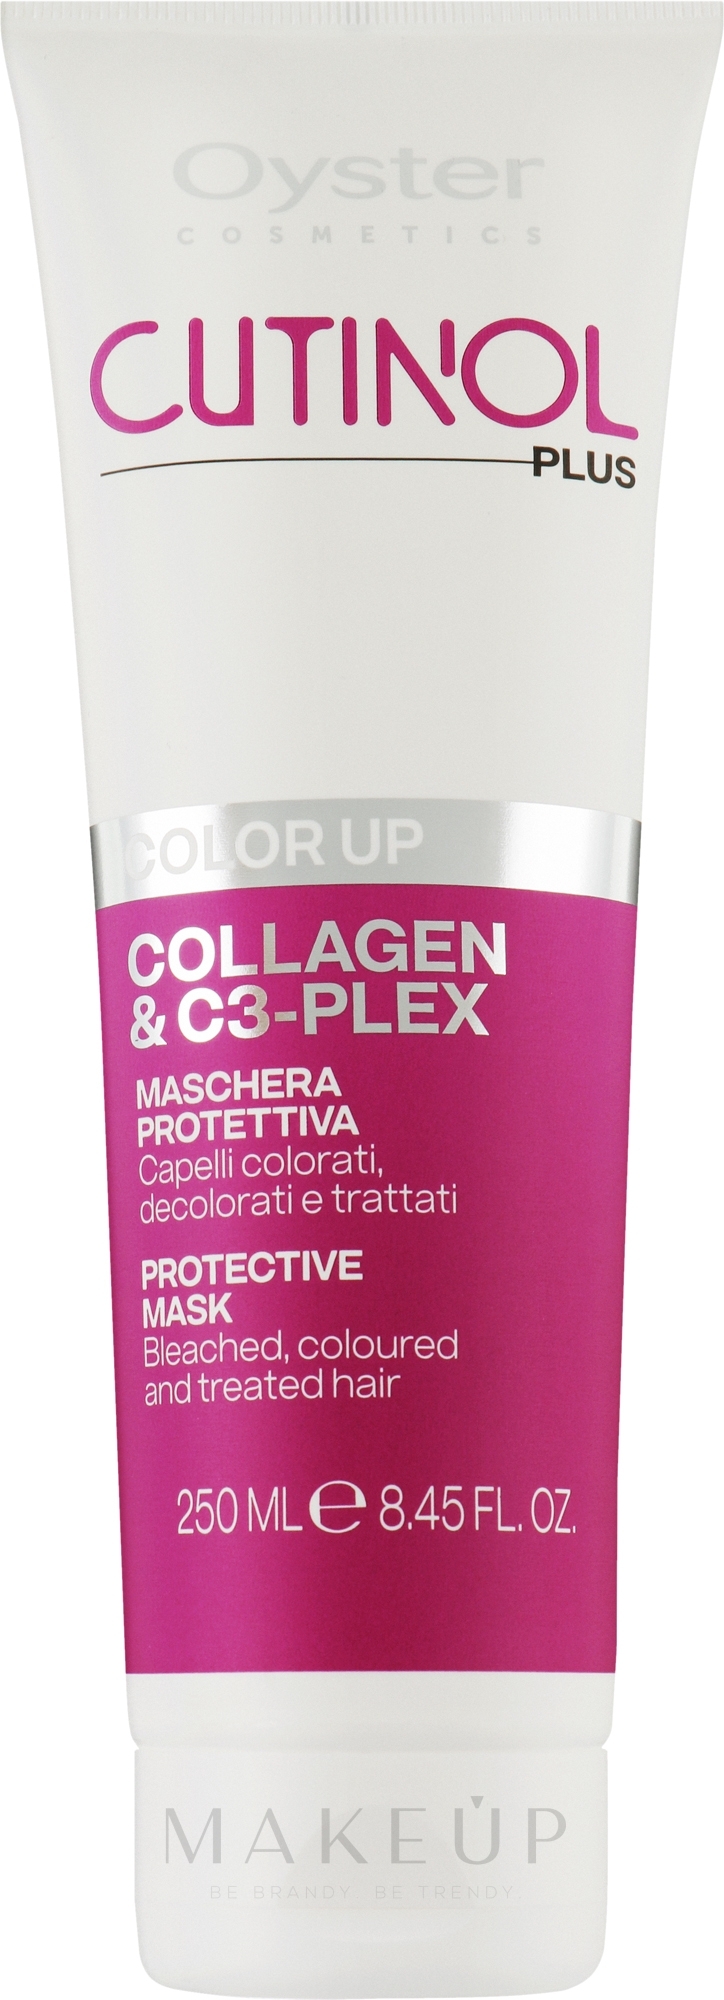 Maske für coloriertes Haar - Oyster Cutinol Plus Collagen & C3-Plex Color Up Protective Mask — Bild 250 ml